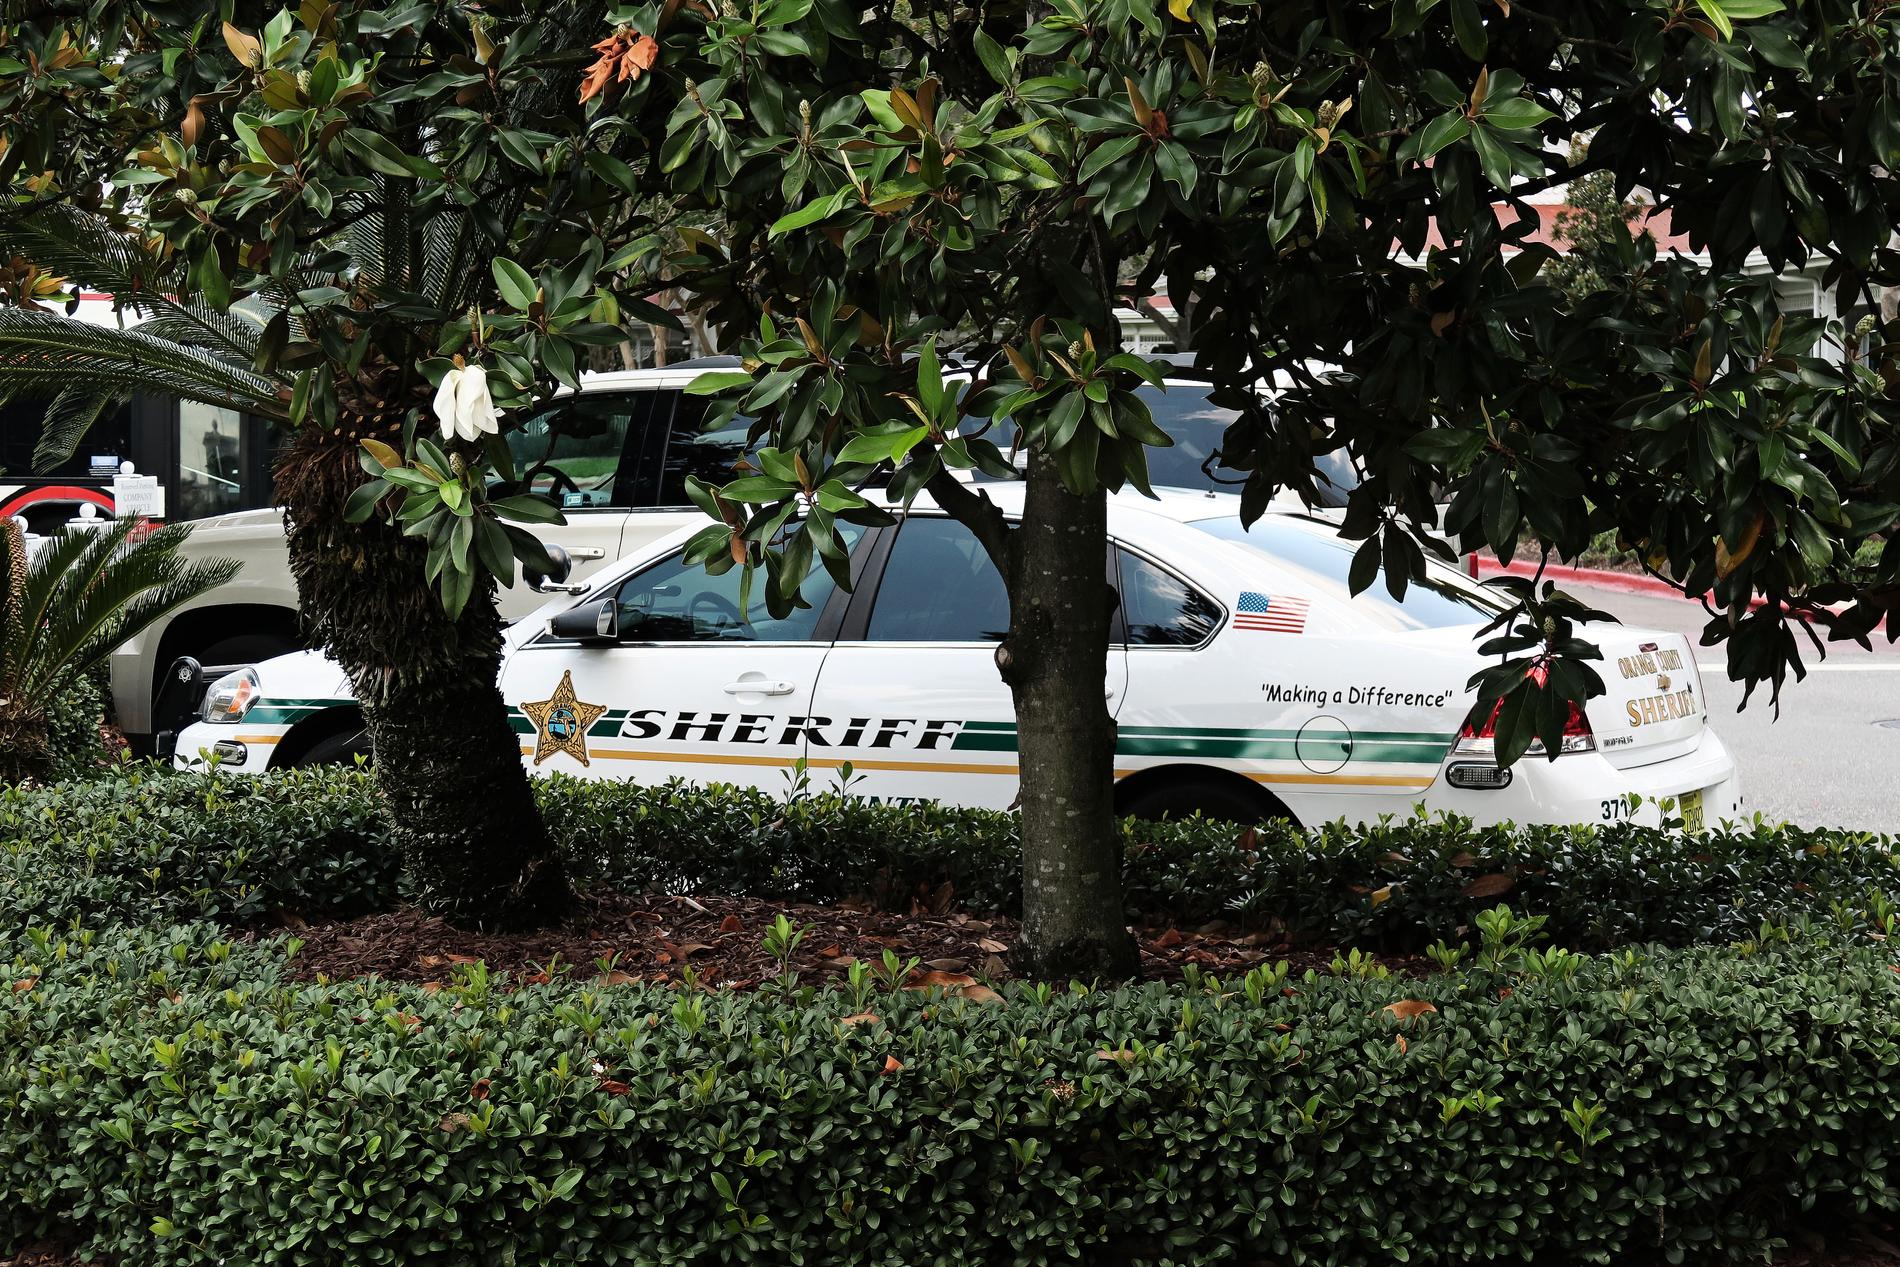 2-åring fångad av alligator på resorten Disney Grand Floridian nära Disney World. En polisbil står utanför.